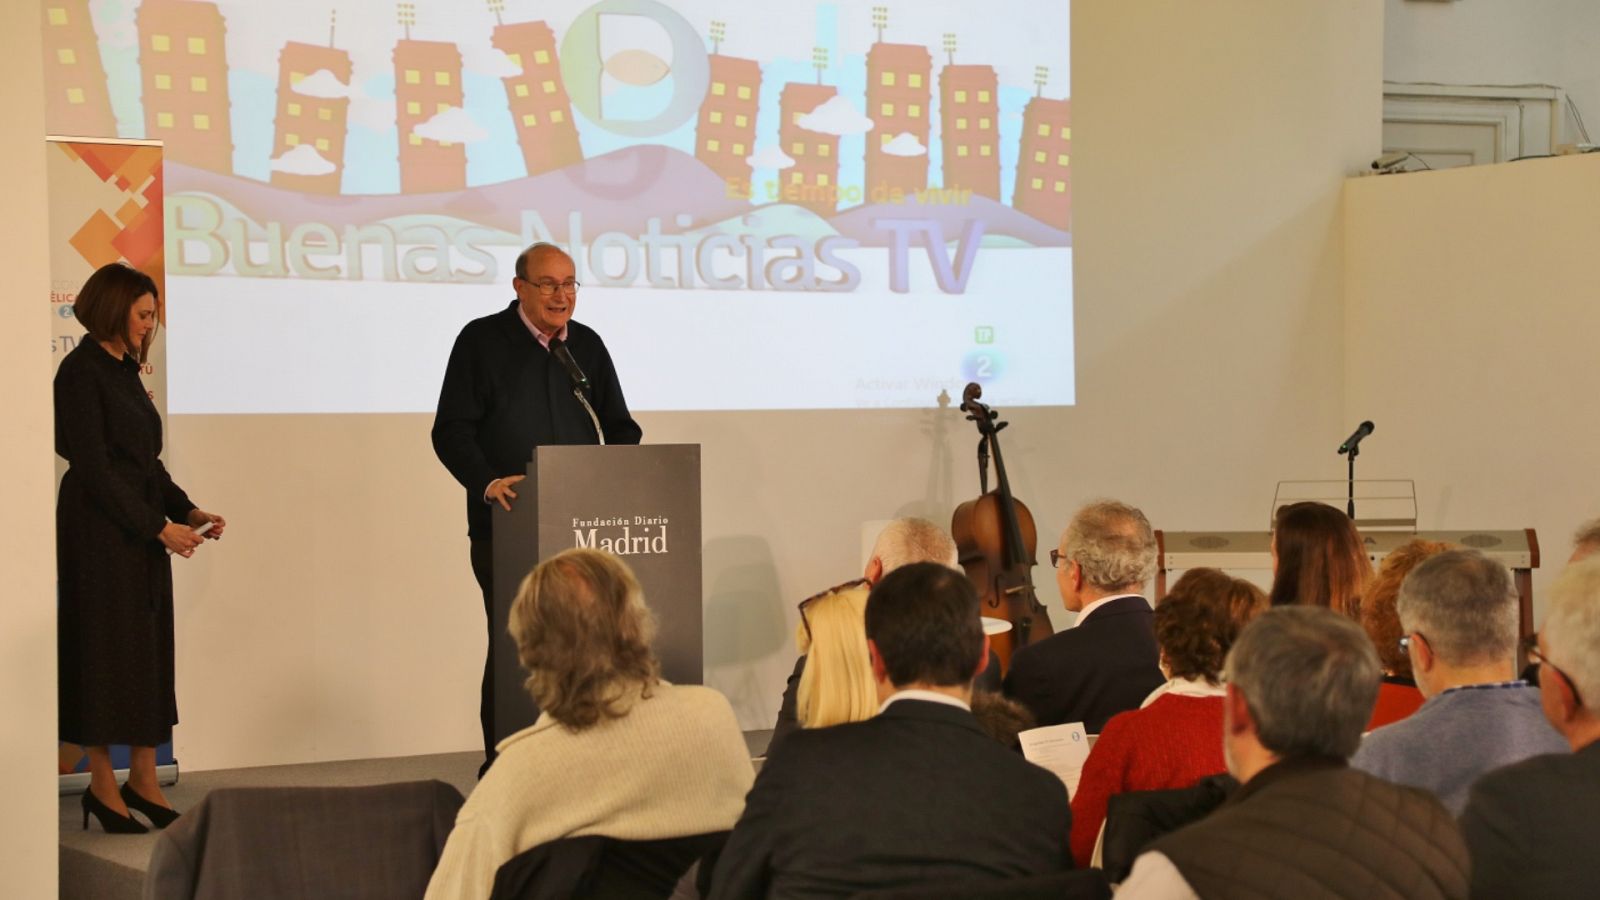 Buenas noticias TV - 35 años de Buenas noticias - RTVE.es